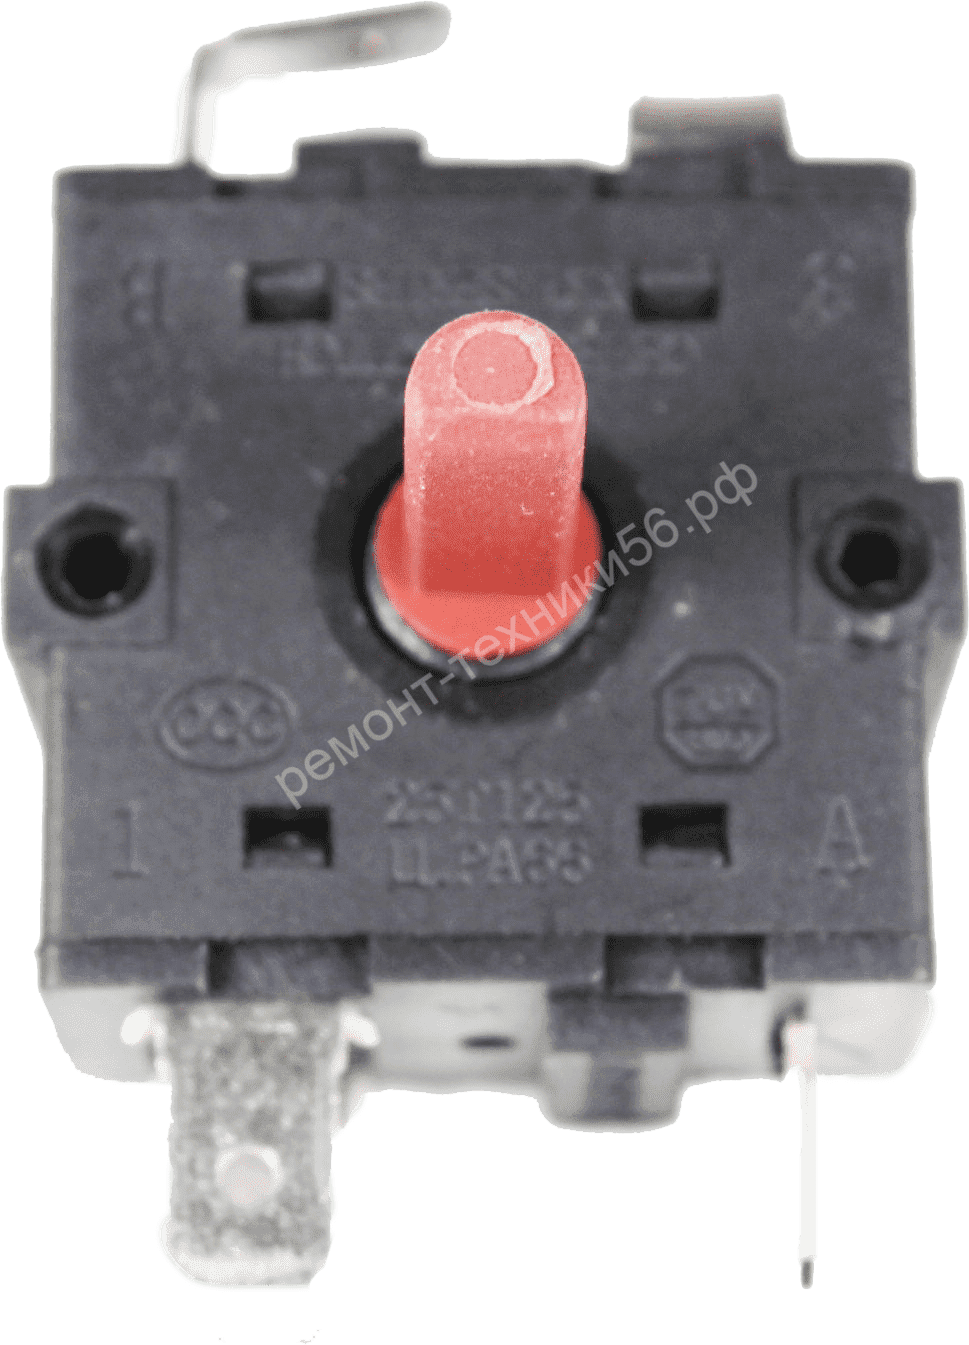 Переключатель Rotary Switch XK1-233,2-1 - выгодная цена фото3